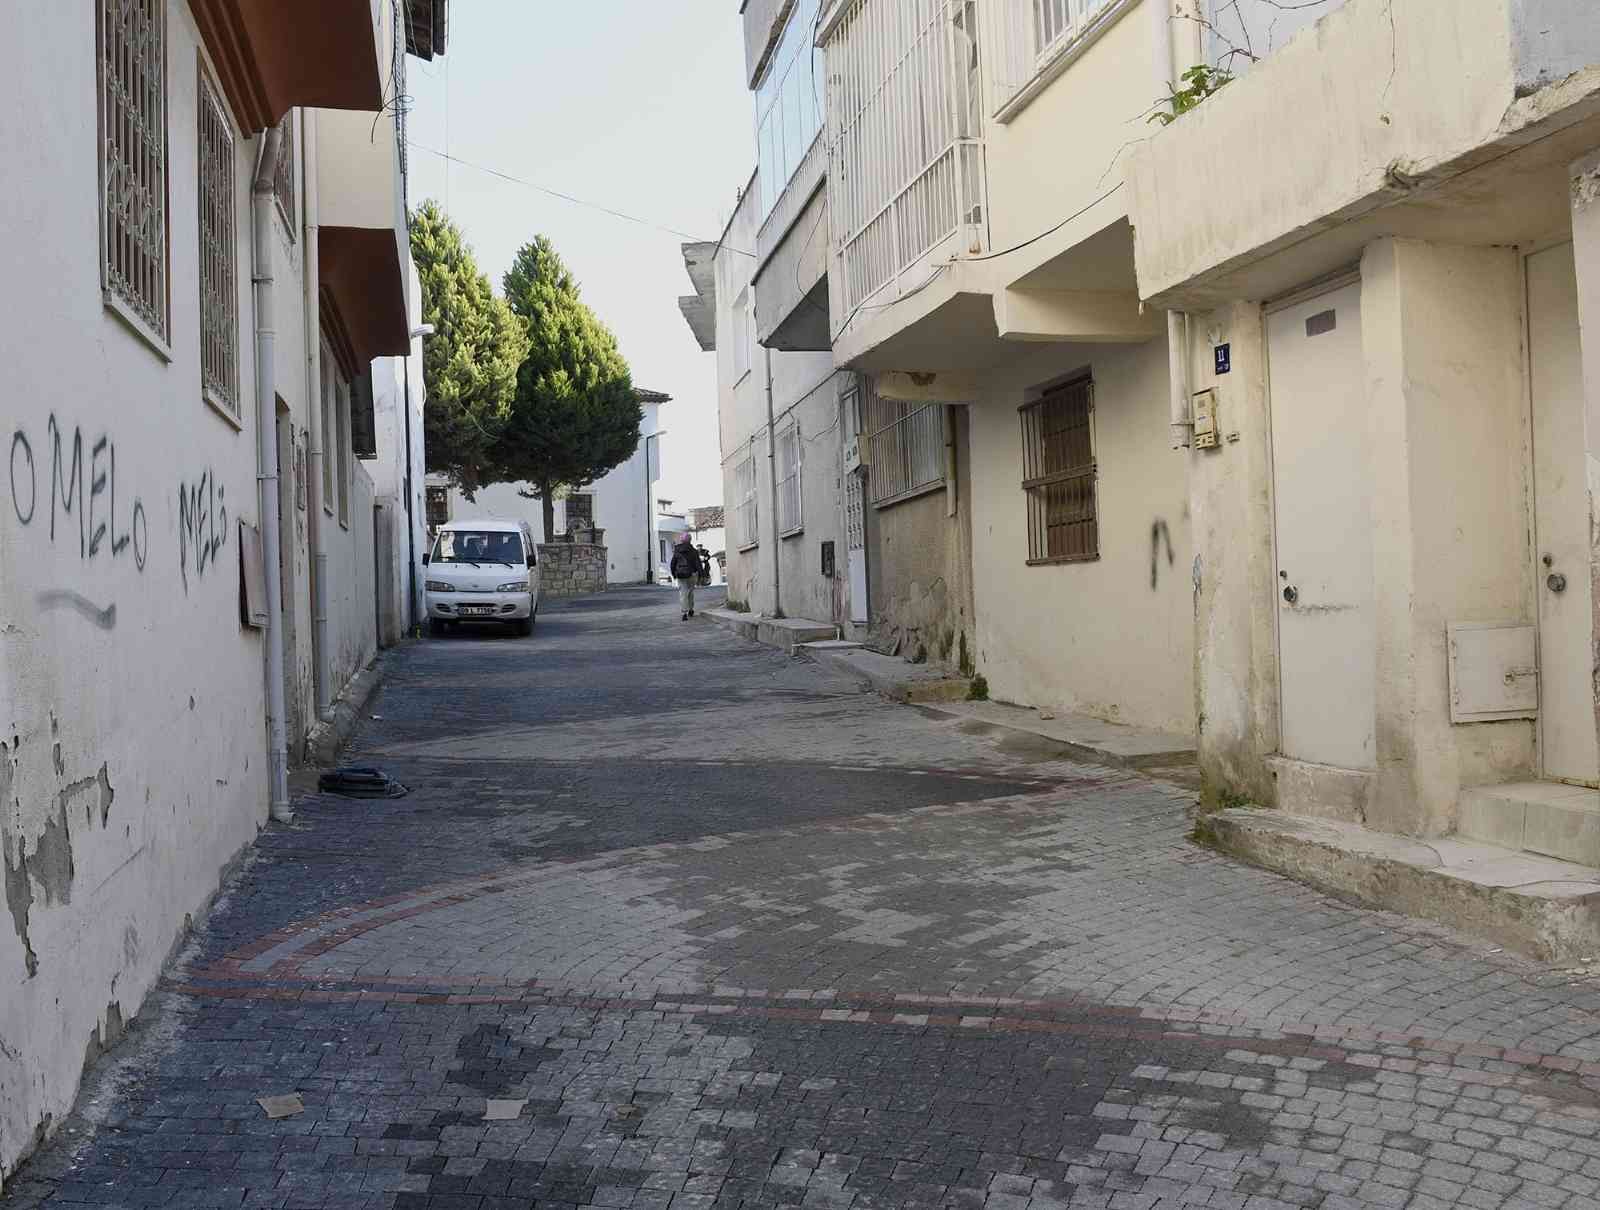 Eski Kuşadası’nın tarihi sokakları aslına uygun olarak yenilendi